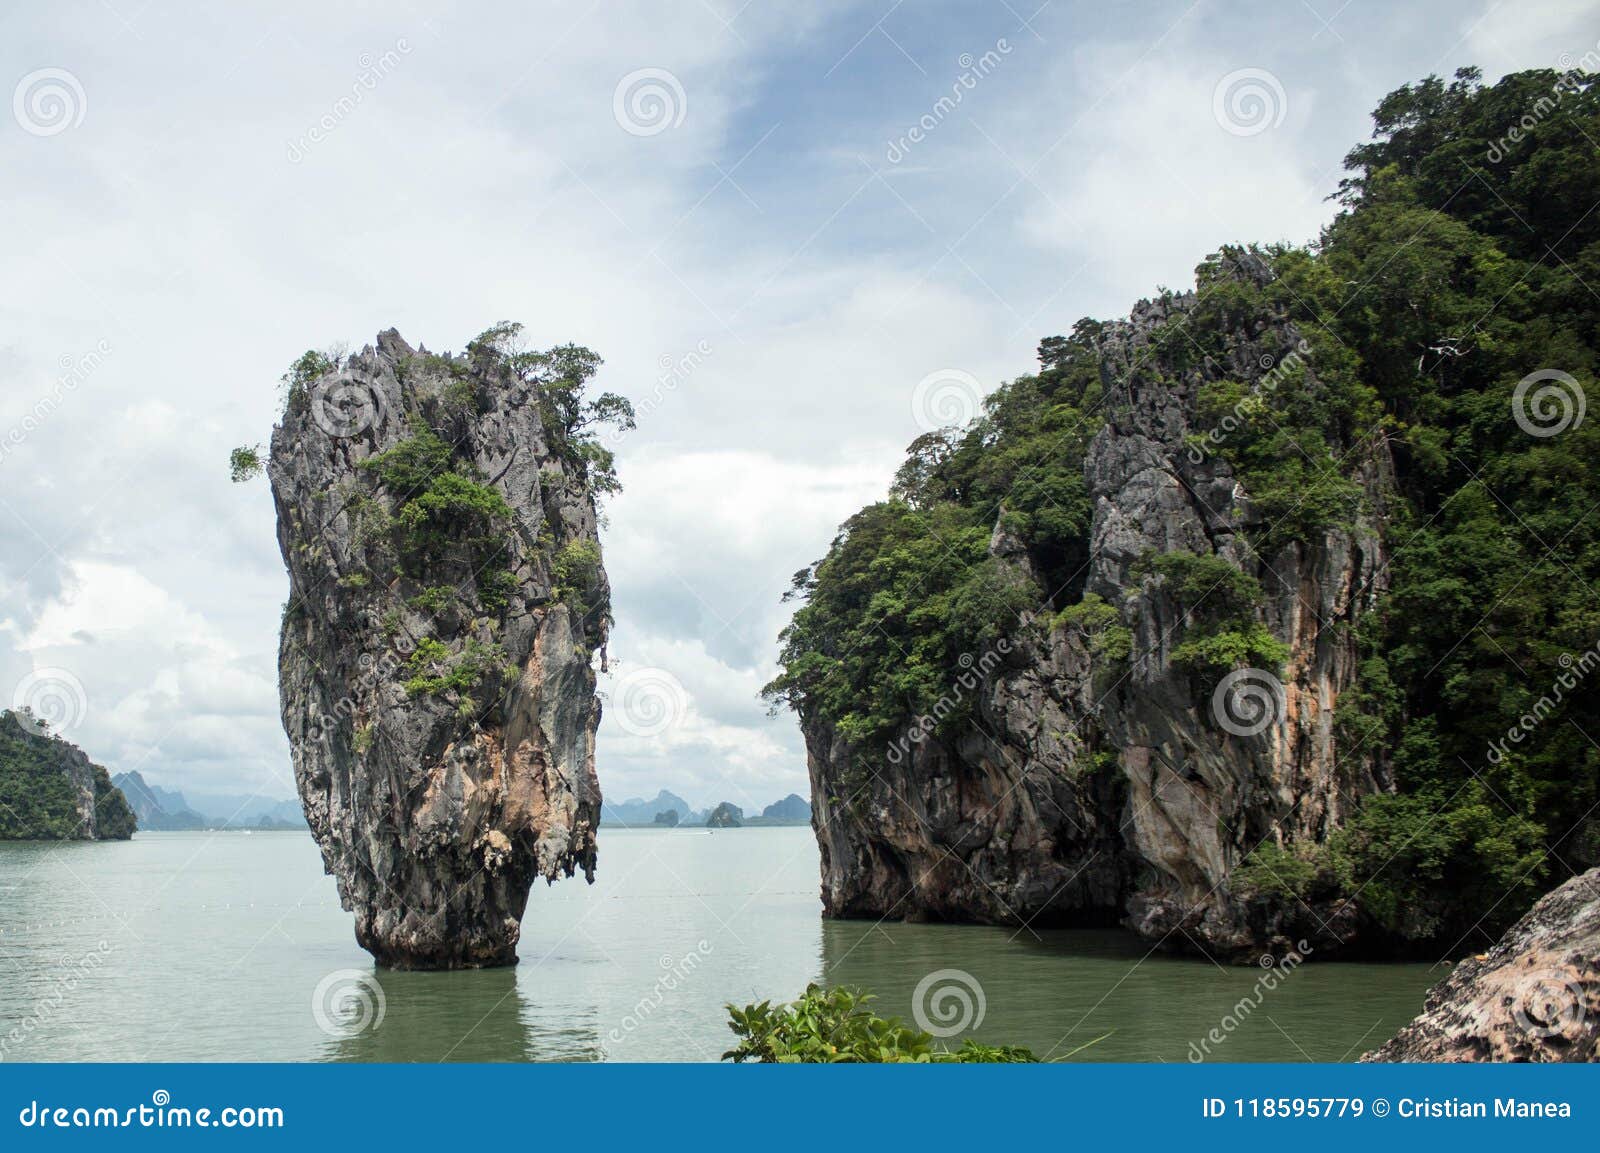 The Famous James Bond Island, Phuket, Thailand-3 Stock Image - Image of ...